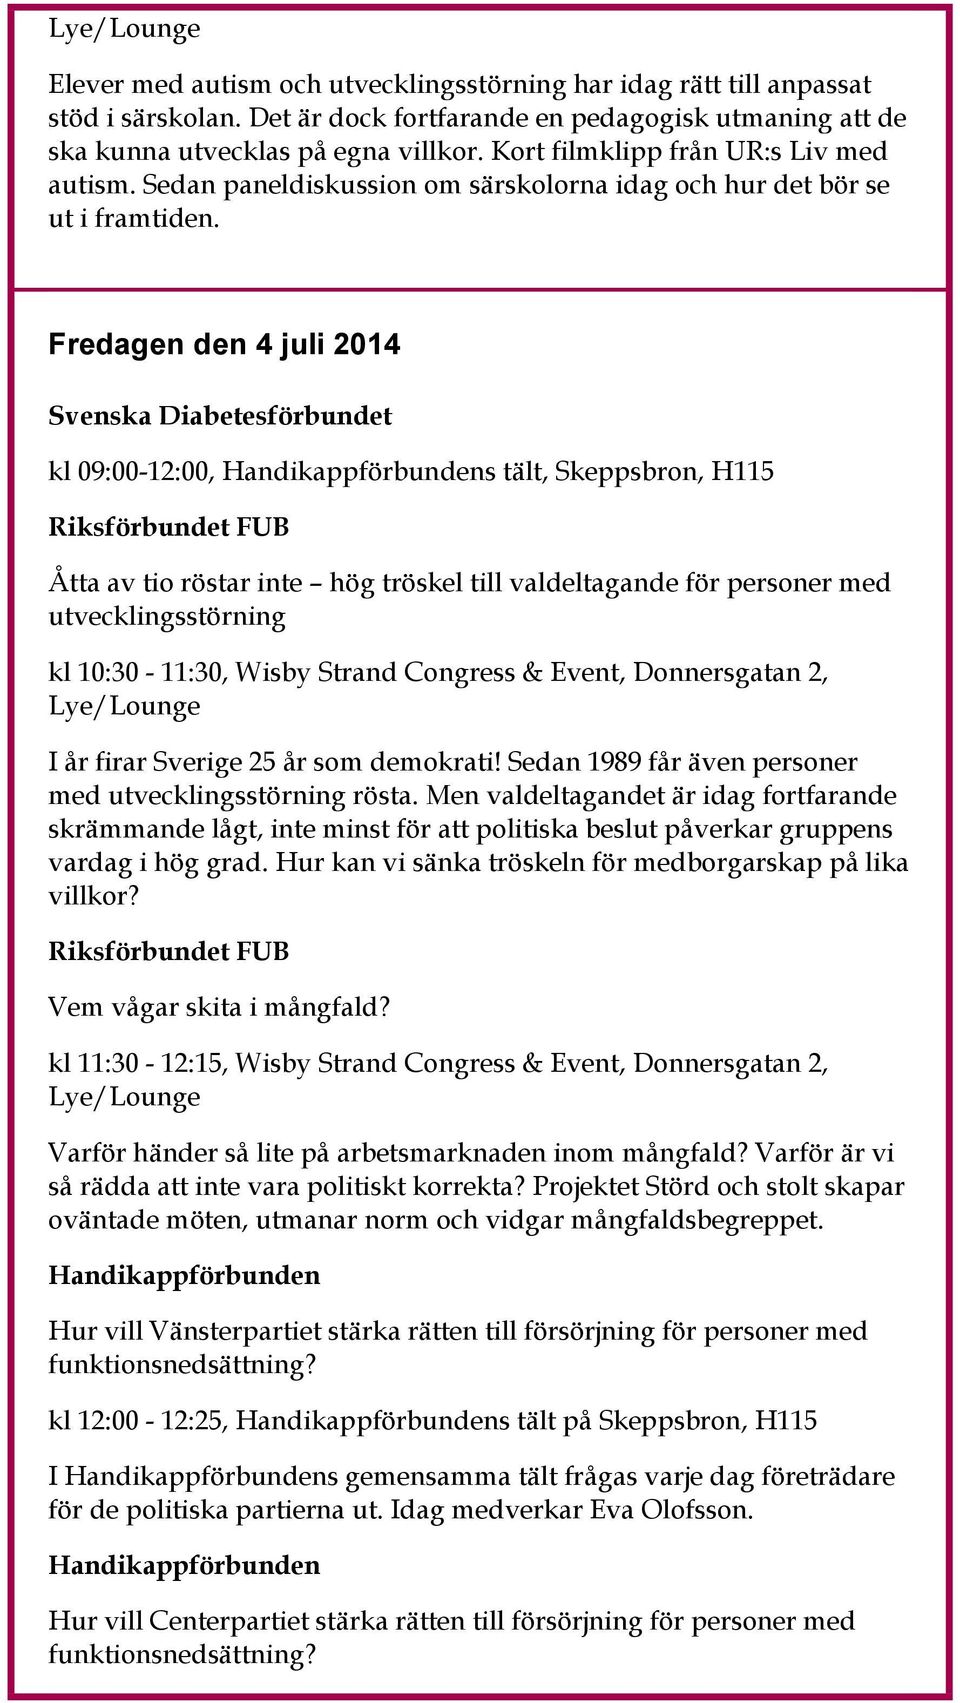 Fredagen den 4 juli 2014 Svenska Diabetesförbundet kl 09:00-12:00, s tält, Skeppsbron, H115 Riksförbundet FUB Åtta av tio röstar inte hög tröskel till valdeltagande för personer med